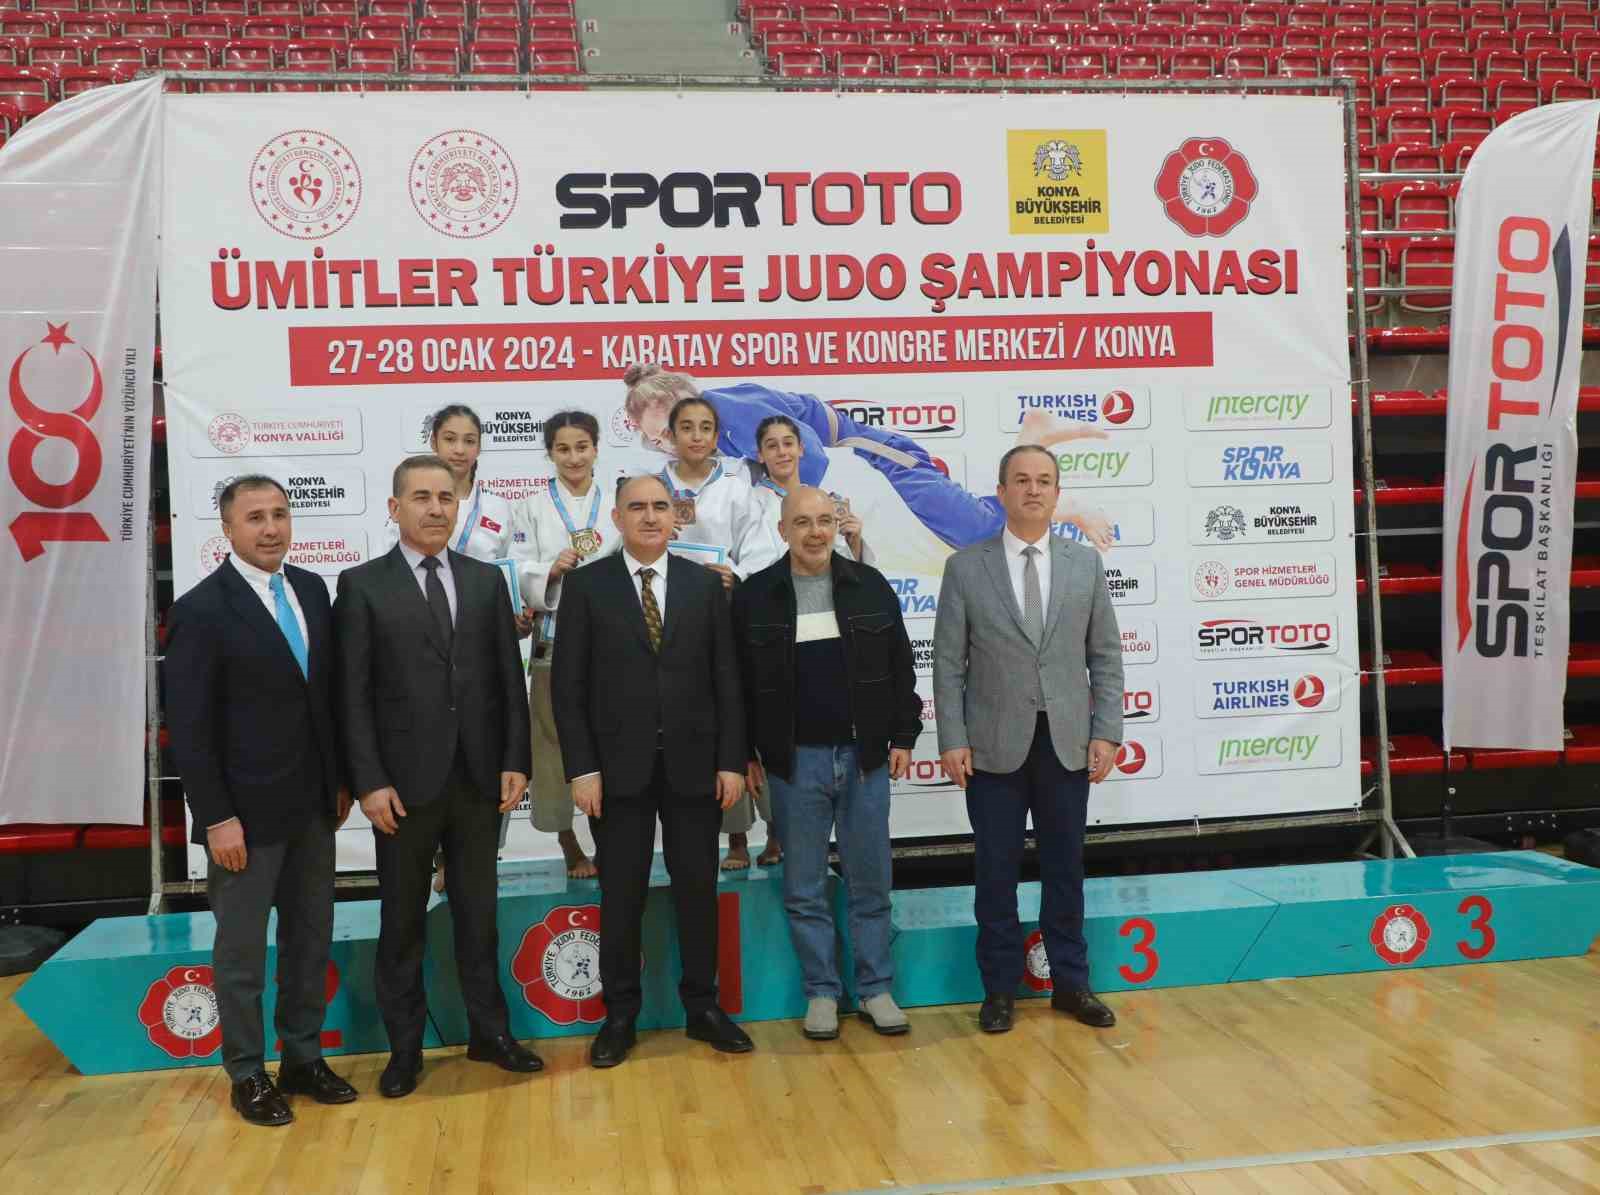 Ümitler Türkiye Judo Şampiyonası Konya’da başladı